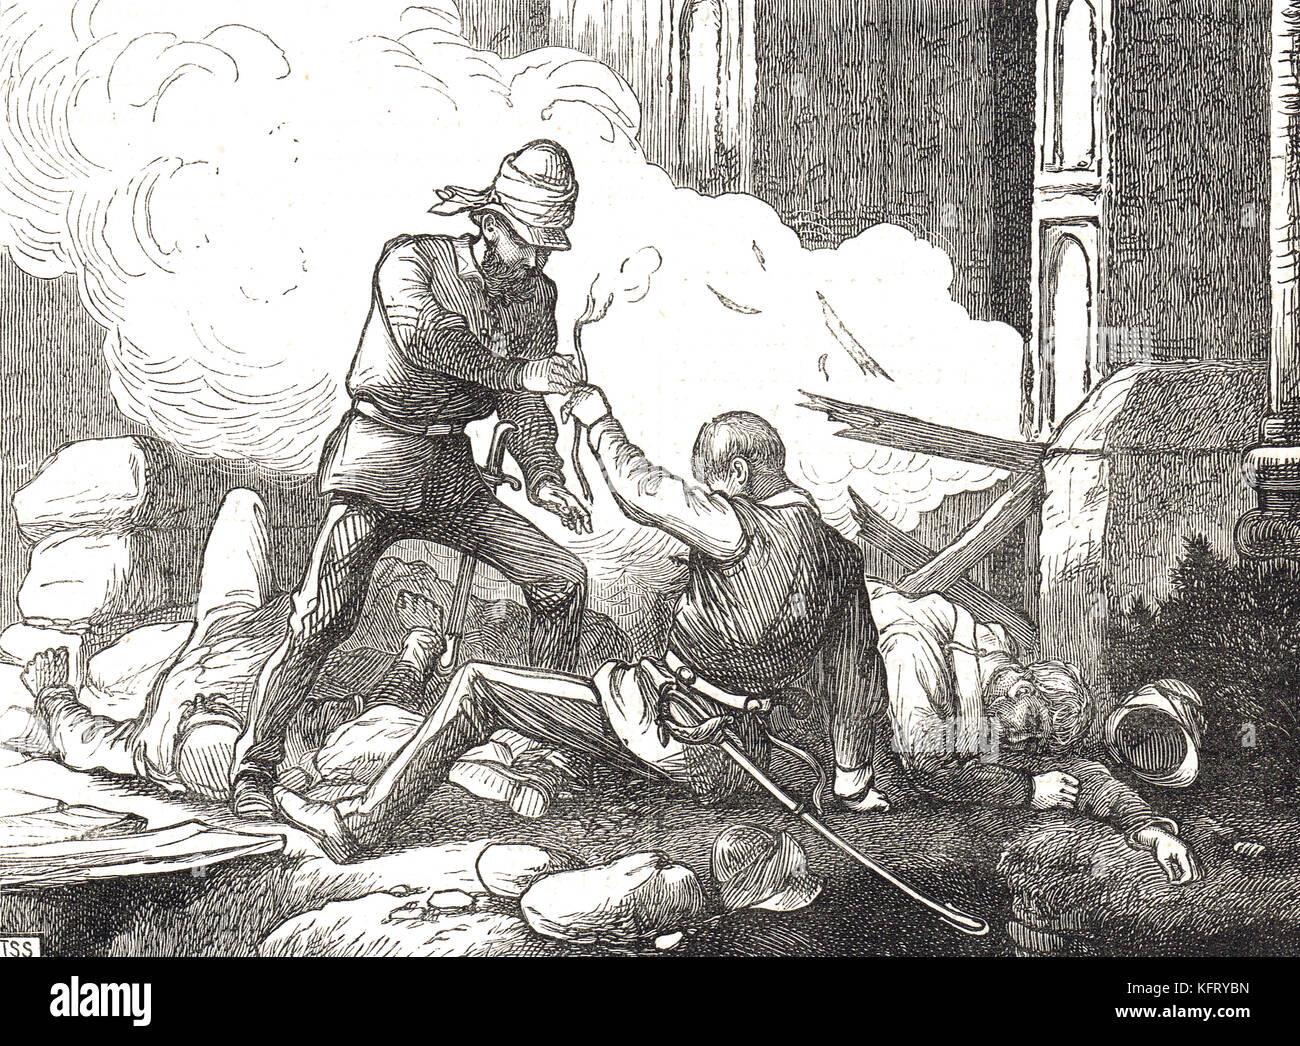 Explosion de la porte du Cachemire, Delhi, Inde, siège de Delhi, rébellion indienne de 1857 Banque D'Images